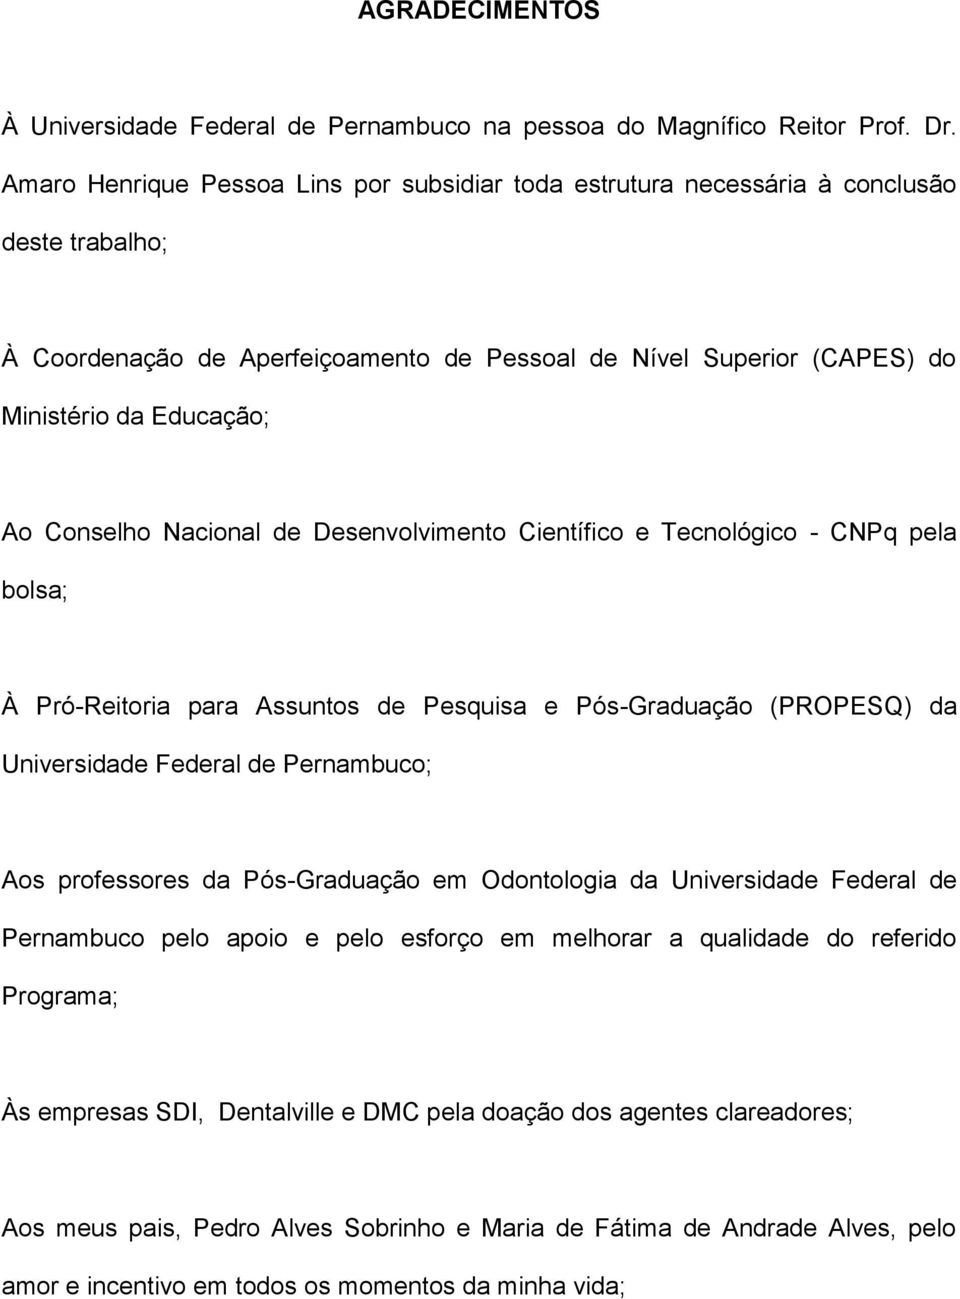 Conselho Nacional de Desenvolvimento Científico e Tecnológico - CNPq pela bolsa; À Pró-Reitoria para Assuntos de Pesquisa e Pós-Graduação (PROPESQ) da Universidade Federal de Pernambuco; Aos